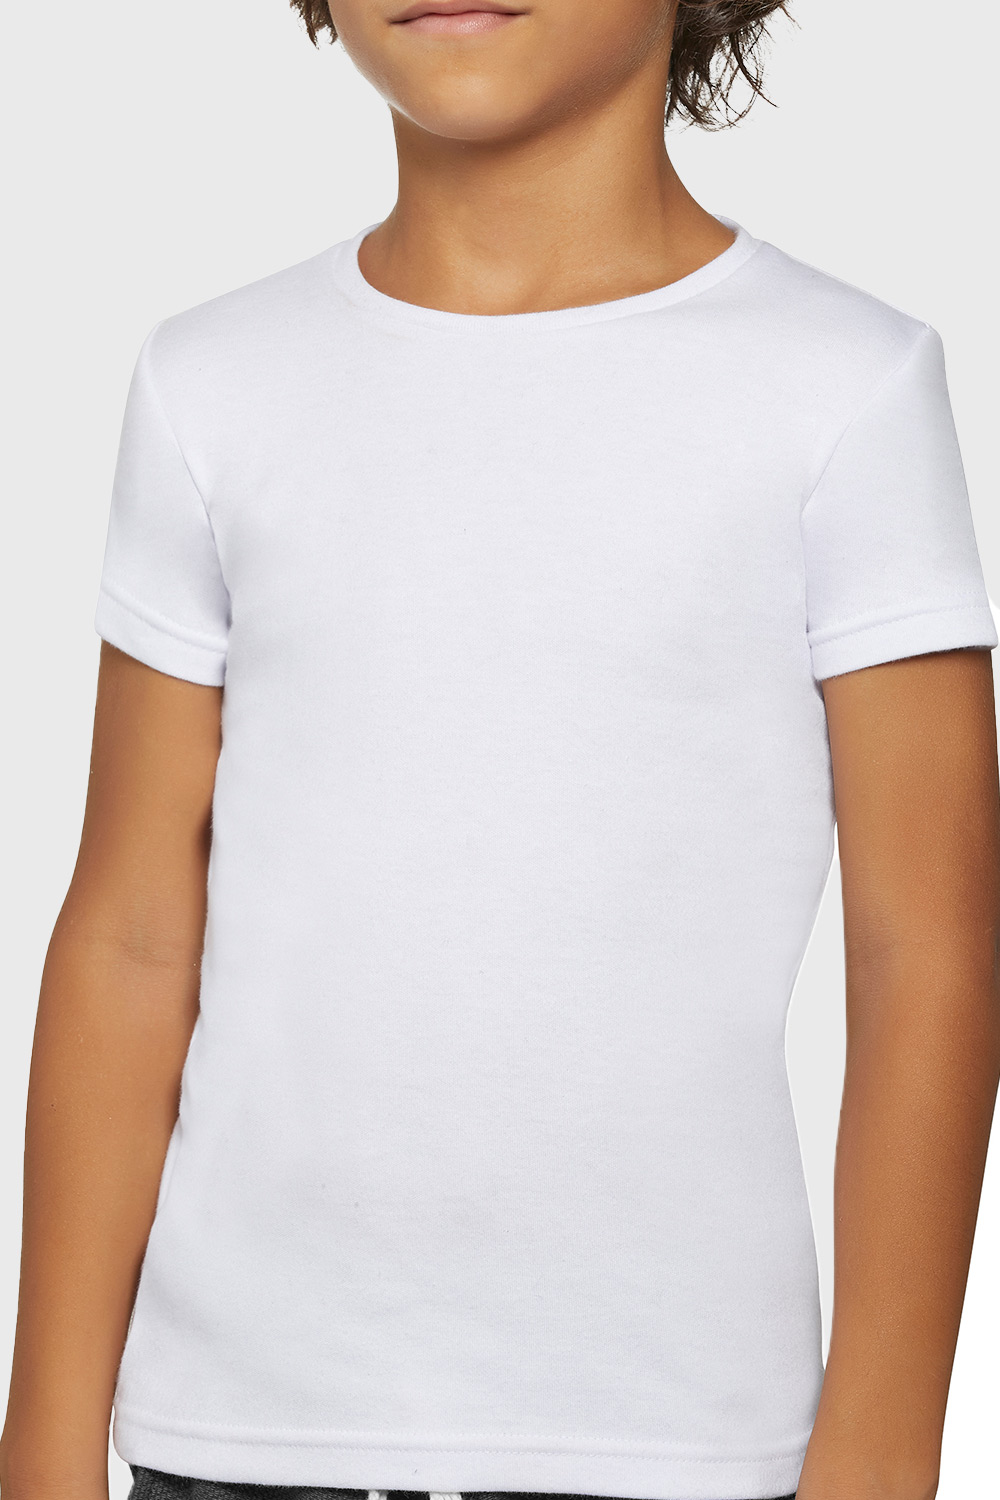 Chlapecké bavlněné tričko Simple